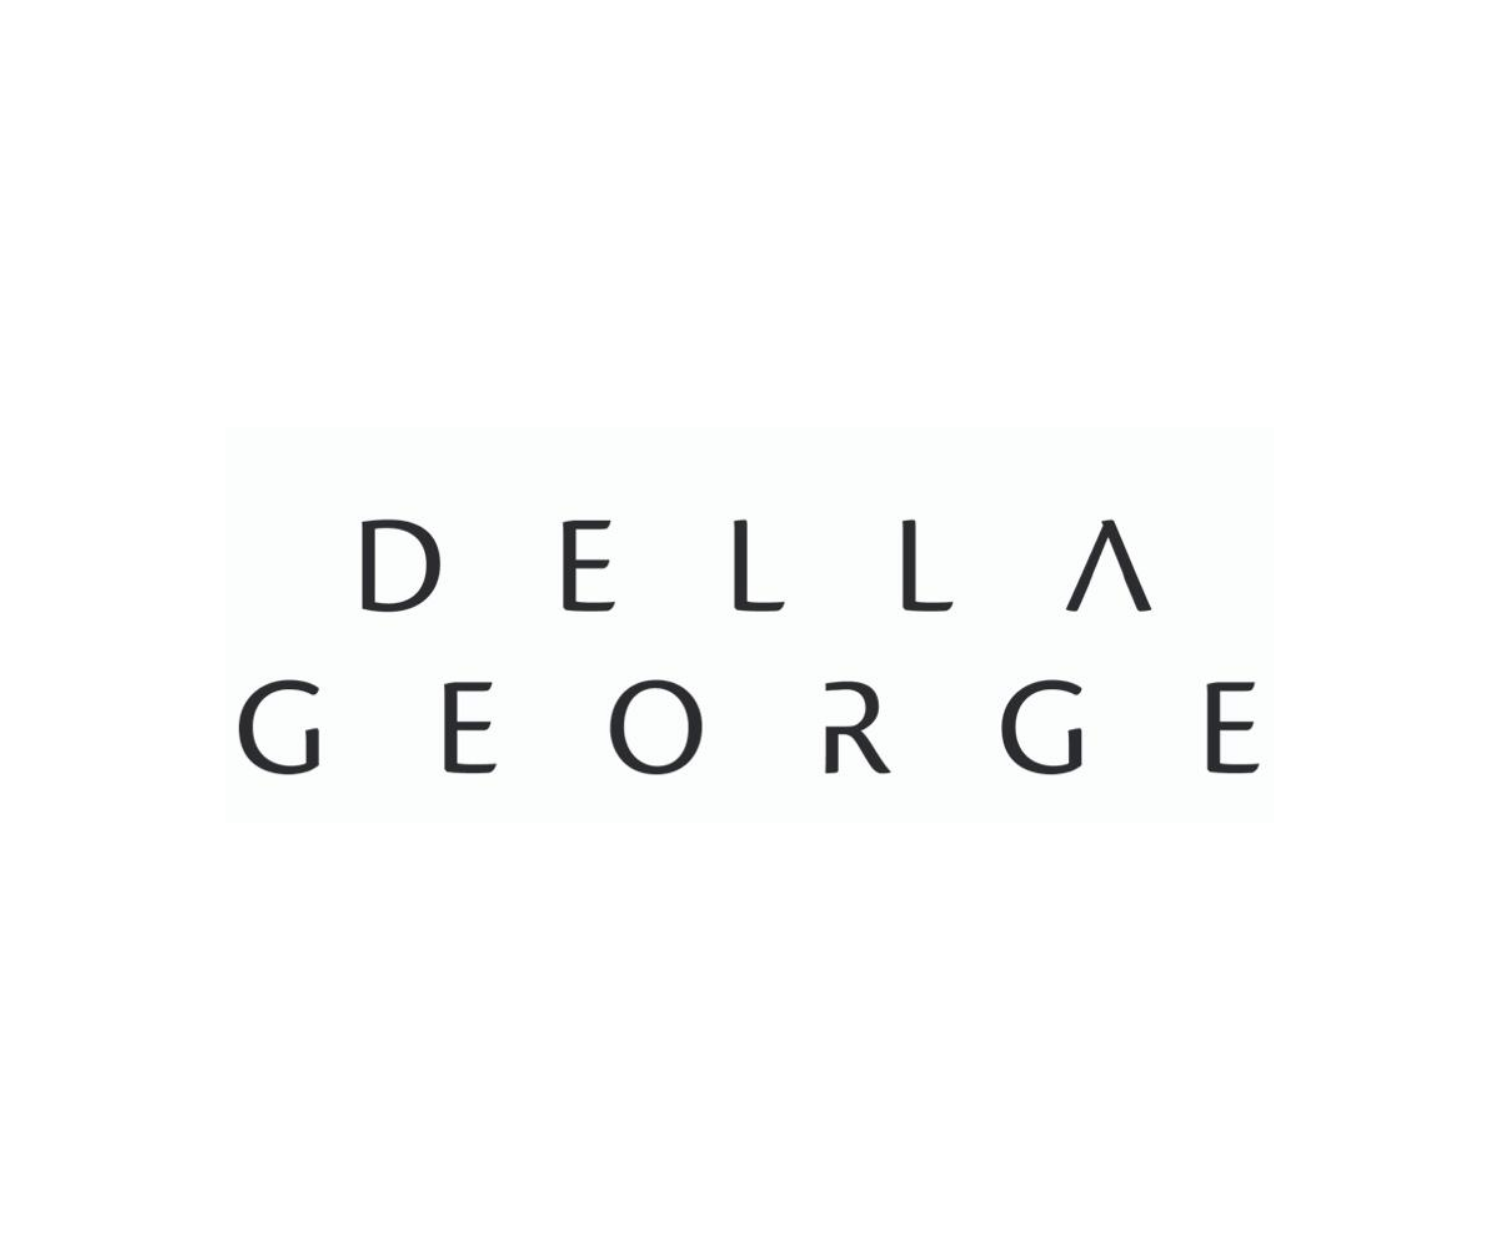 I AM SQUARED - Logo - Della George 2